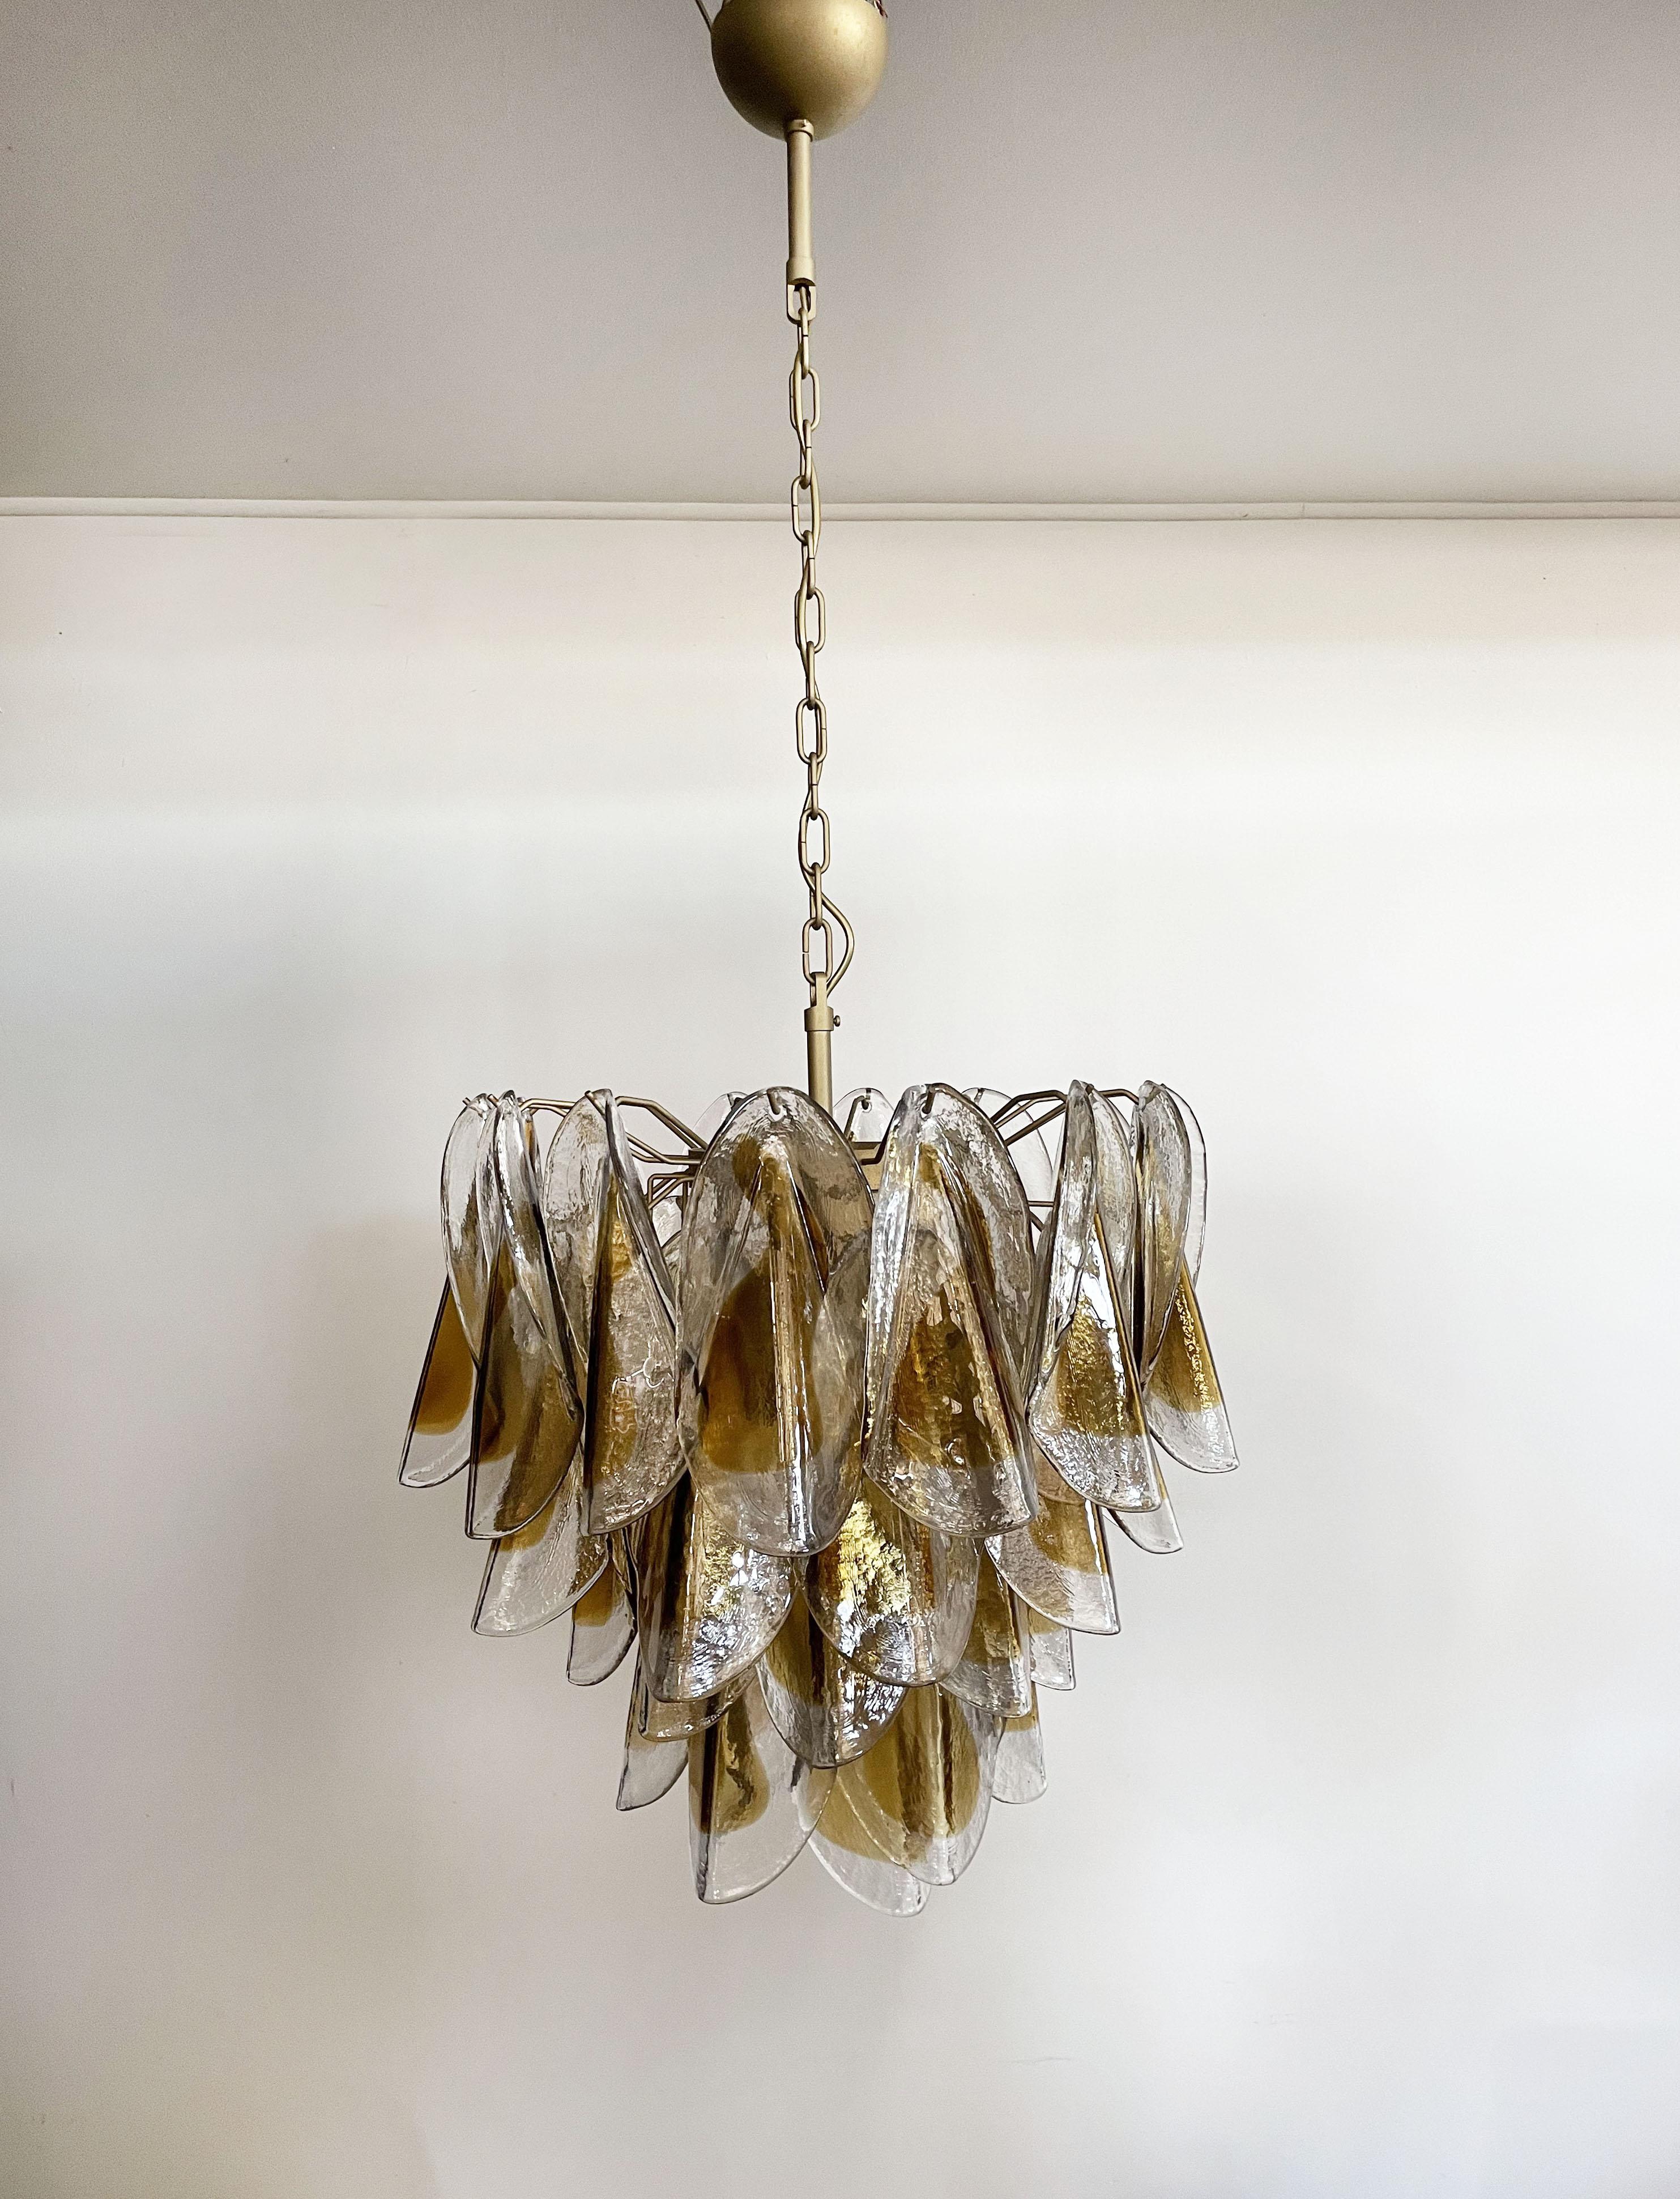 Seltener italienischer Murano-Kronleuchter im Vintage-Stil.  Die Leuchte besteht aus 41 einzelnen mundgeblasenen Glaselementen (transparent und bernsteinfarben), die an einem goldfarbenen Metallrahmen hängen. Jedes Stück klar mit bernsteinfarbenem